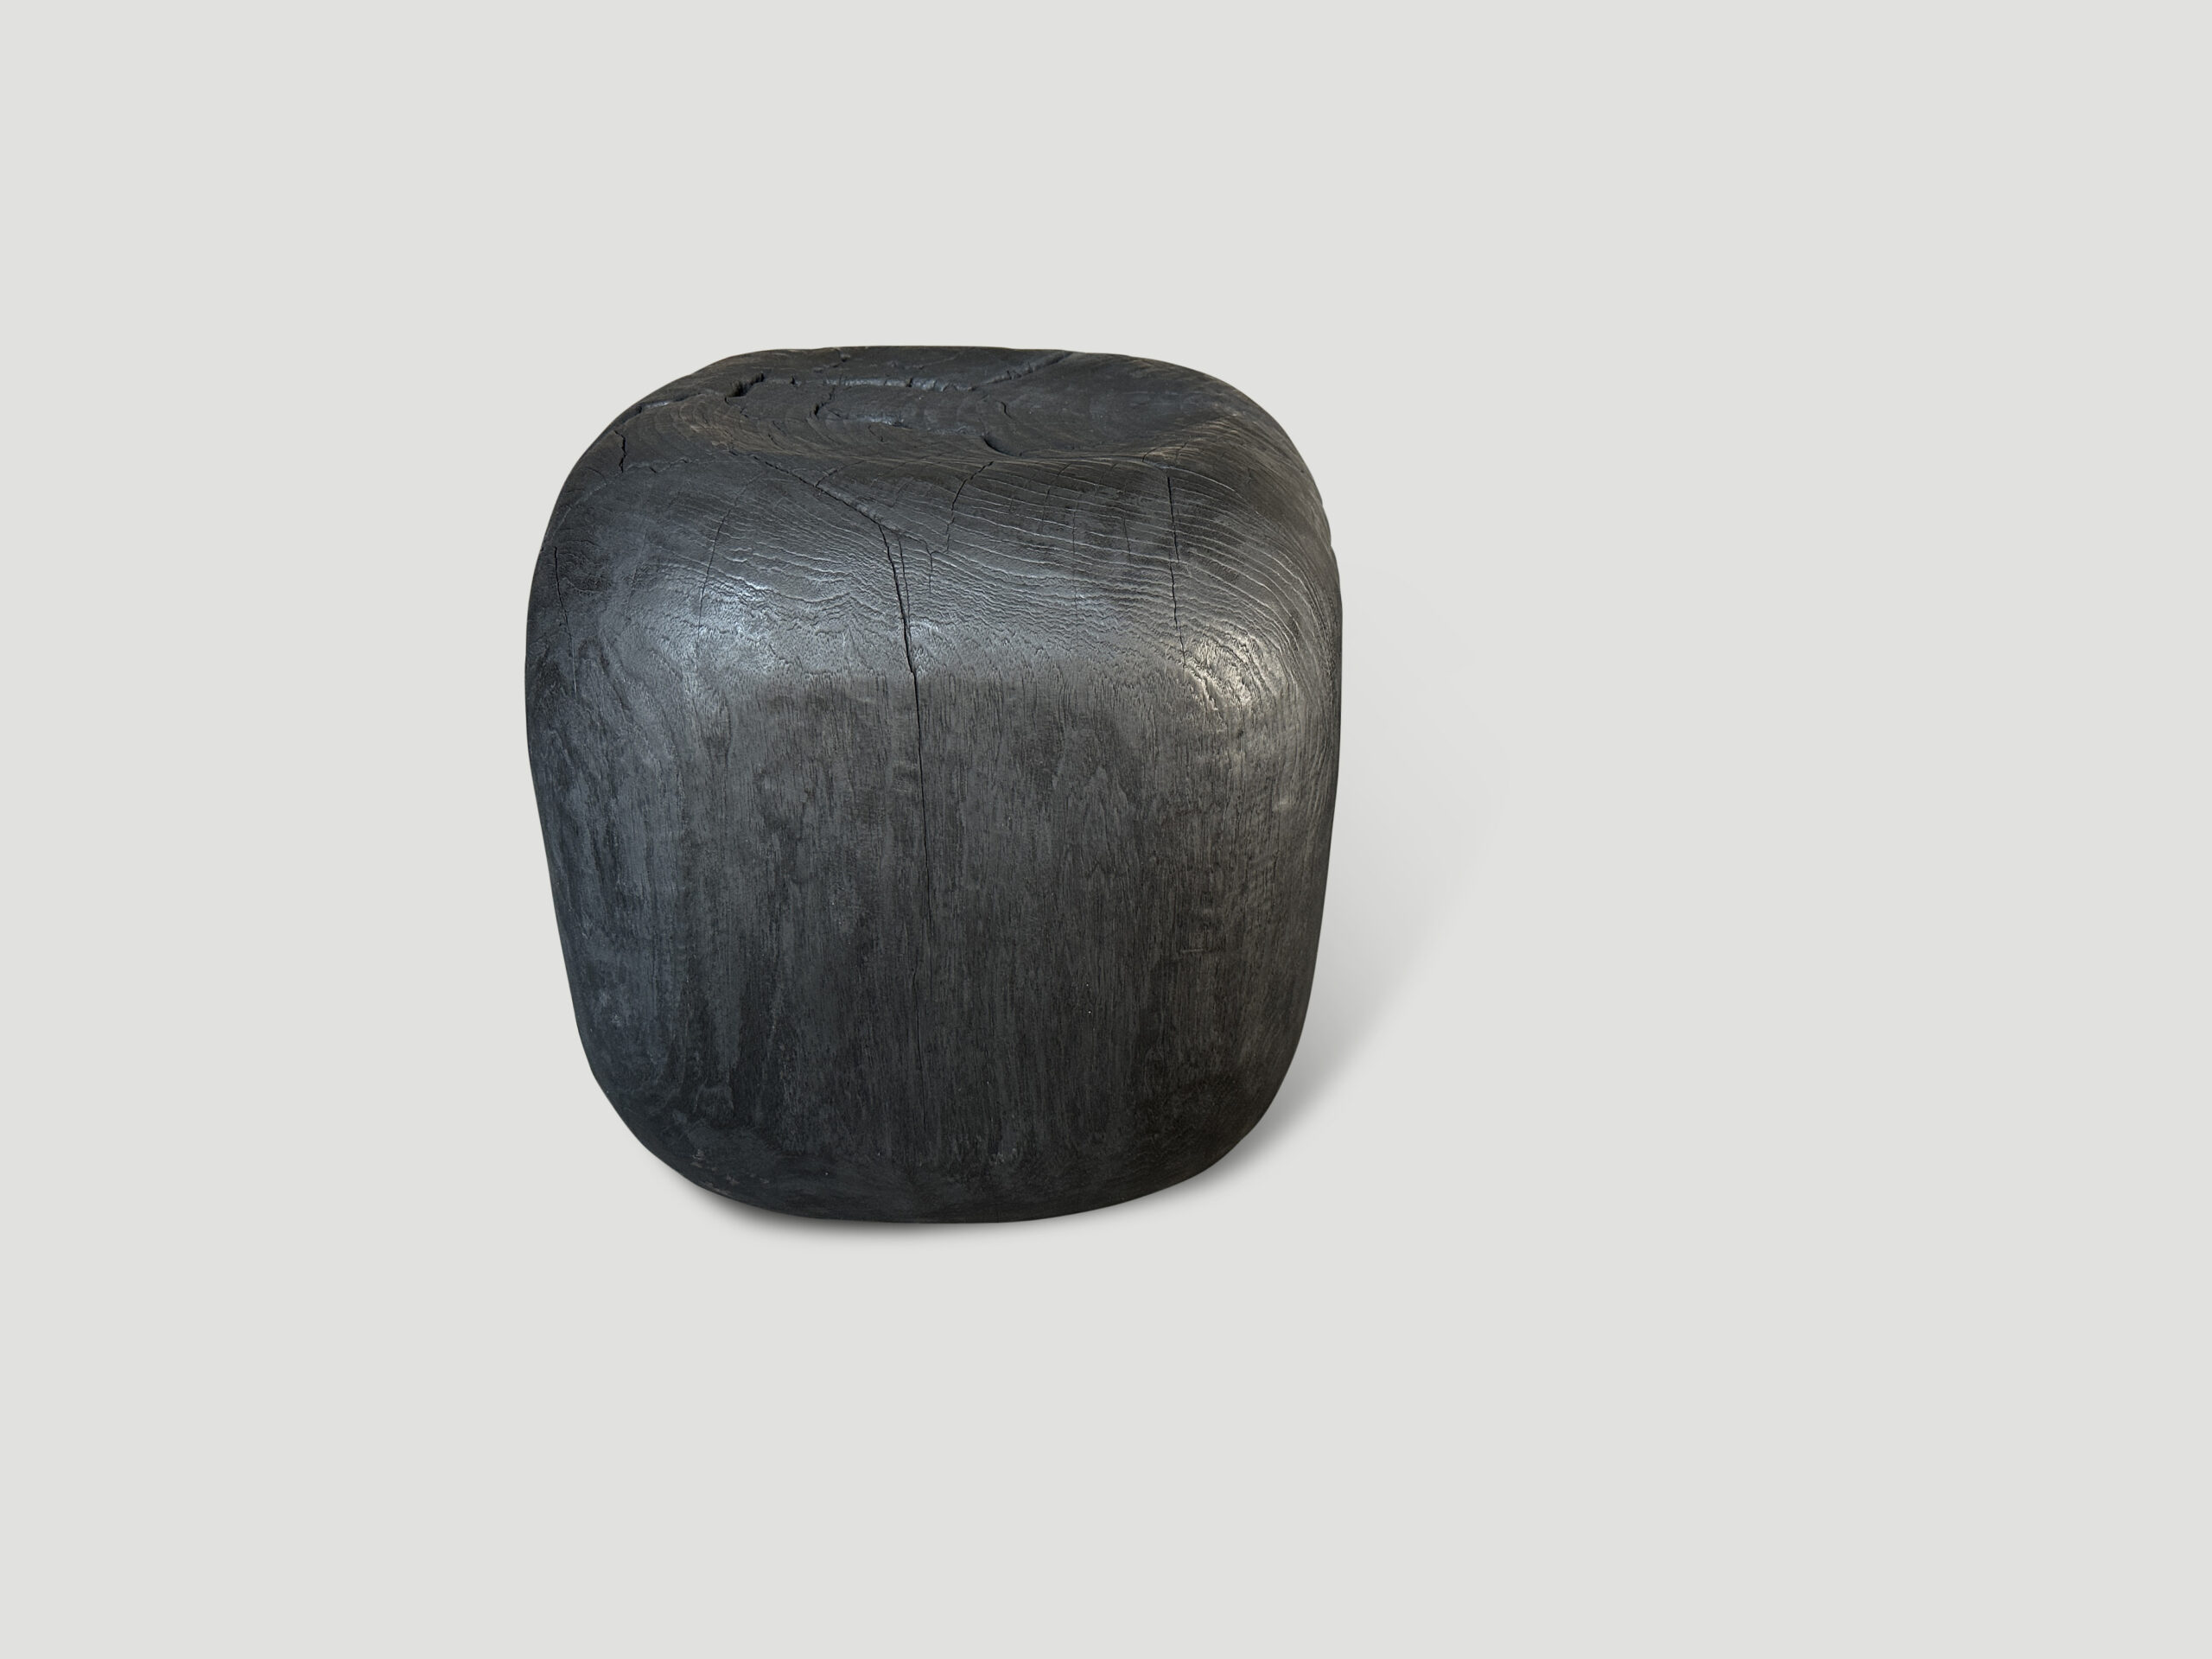 charred minimalist suar wood side table or stool